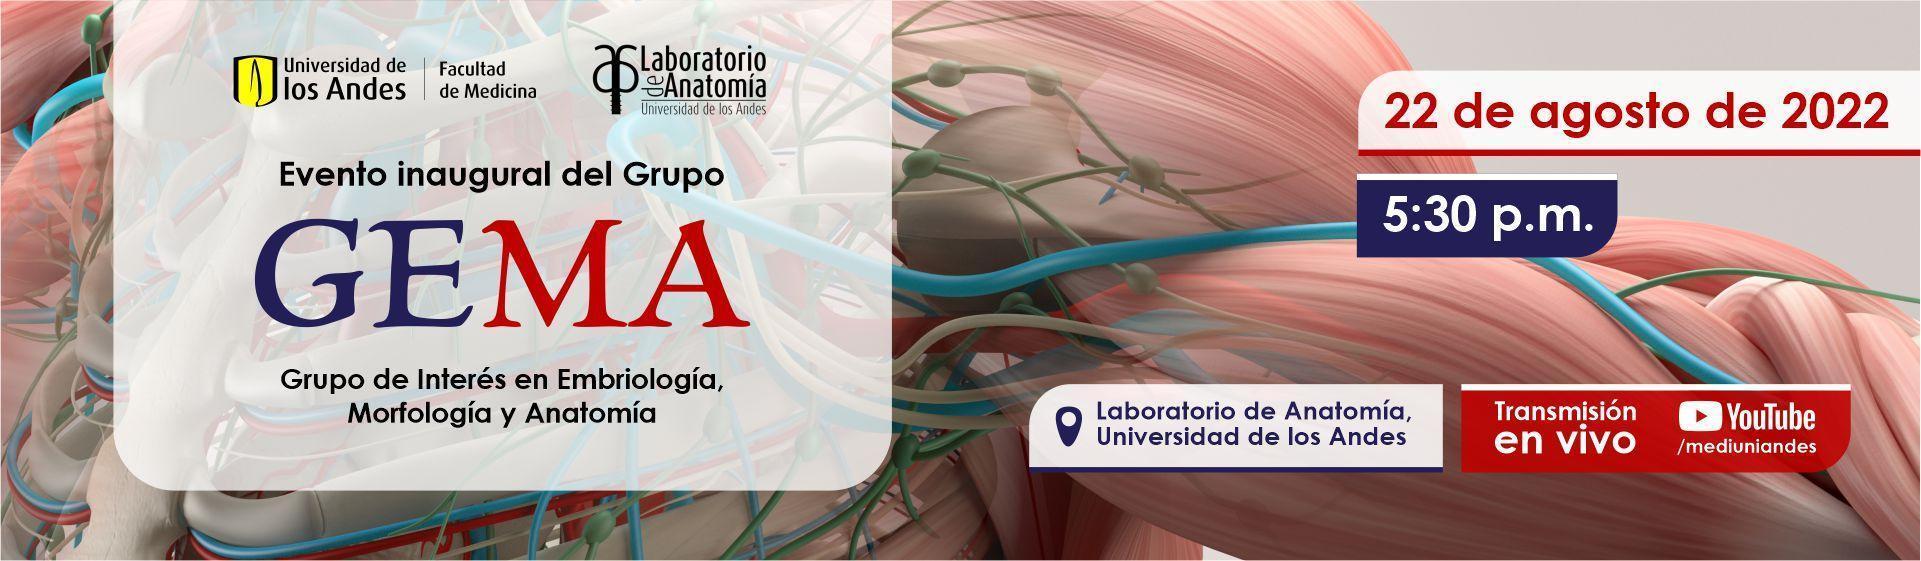 evento inaugural del Grupo de Interés en Embriología, Morfología, y Anatomía (GEMA).